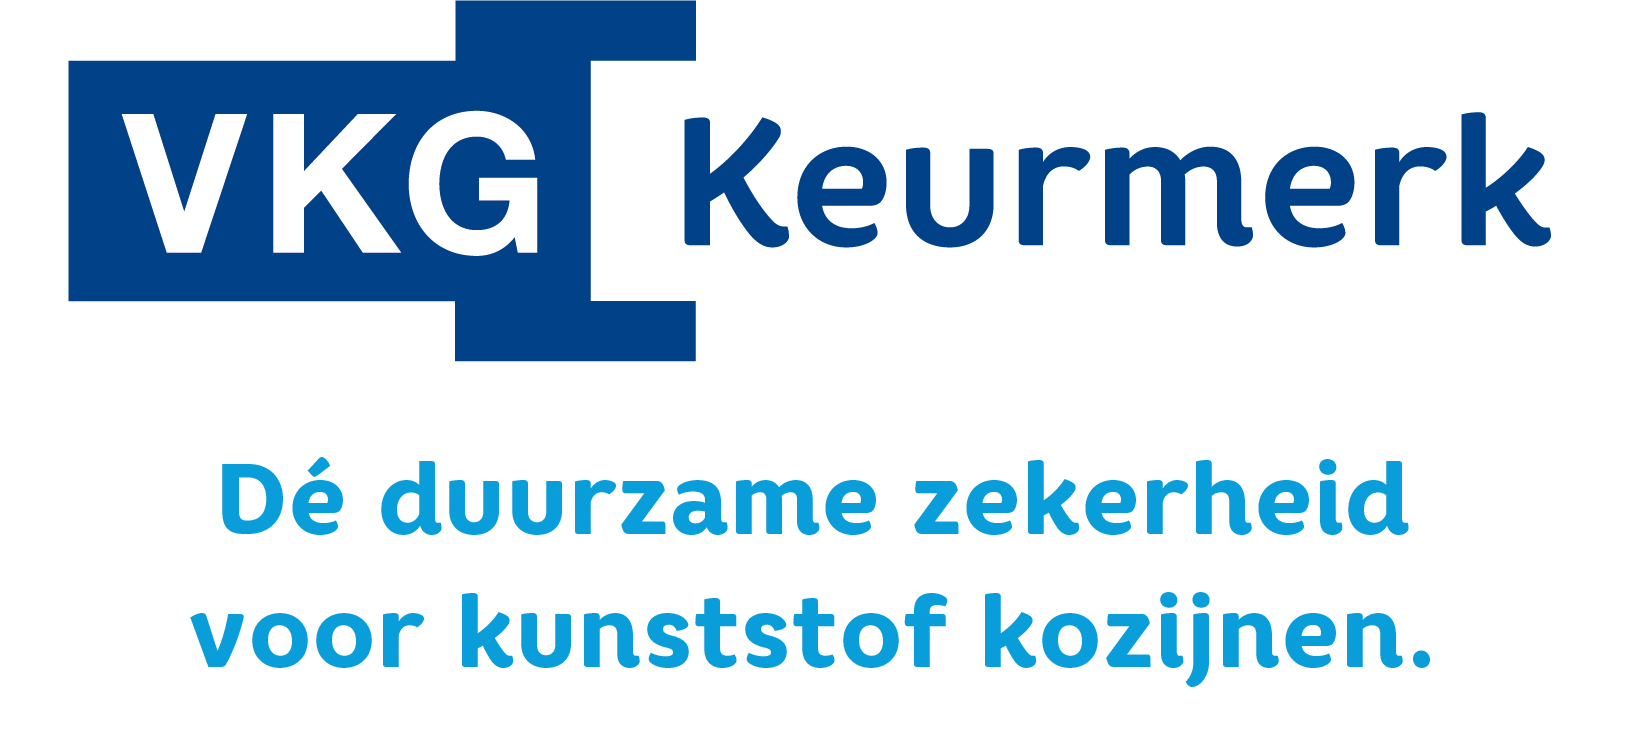 Logo VKG payoff onder logo 2 regels